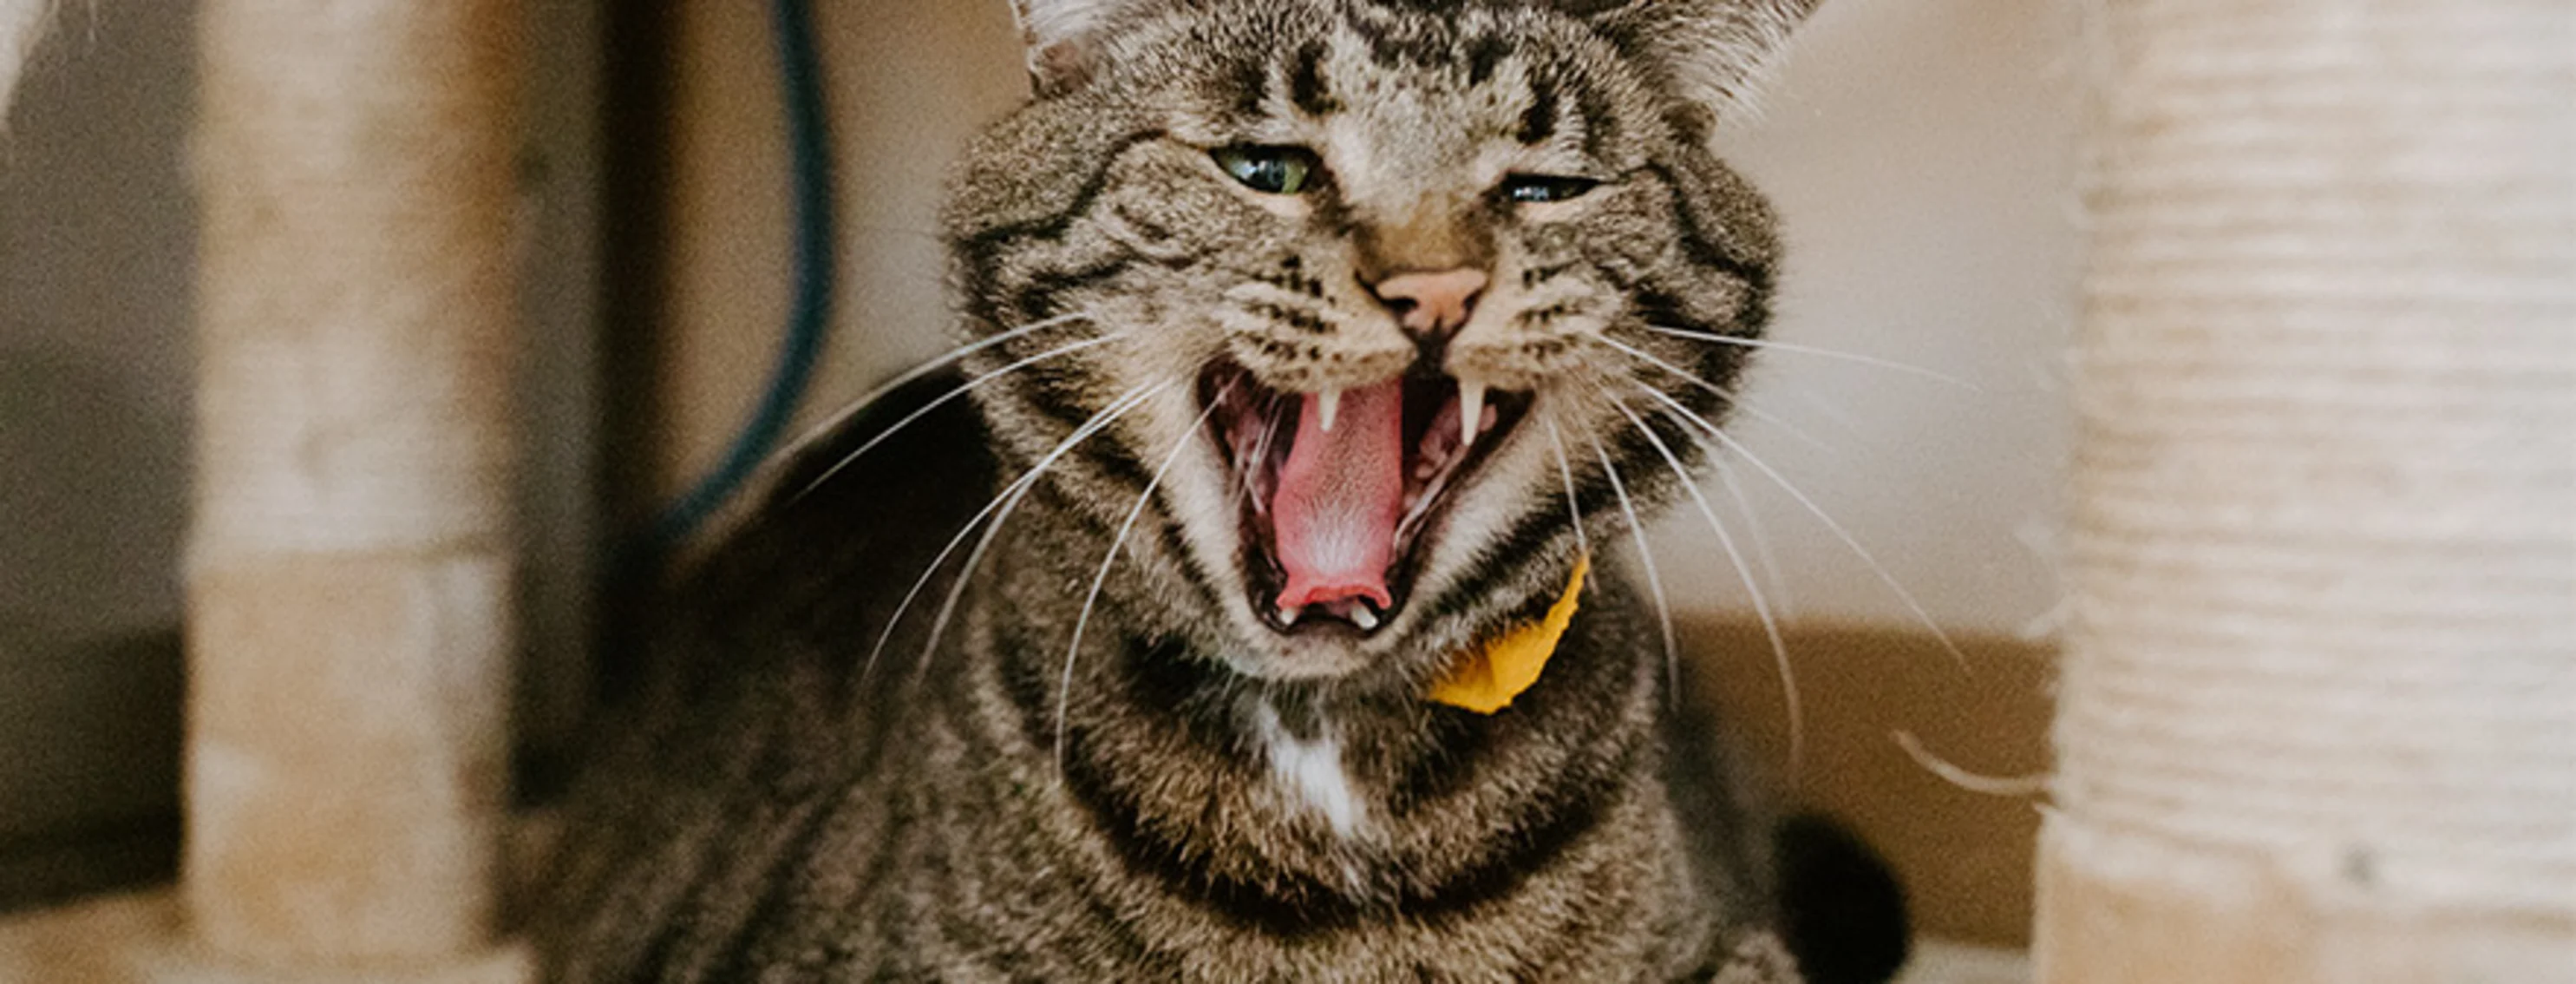 tabby on cat condo yawning